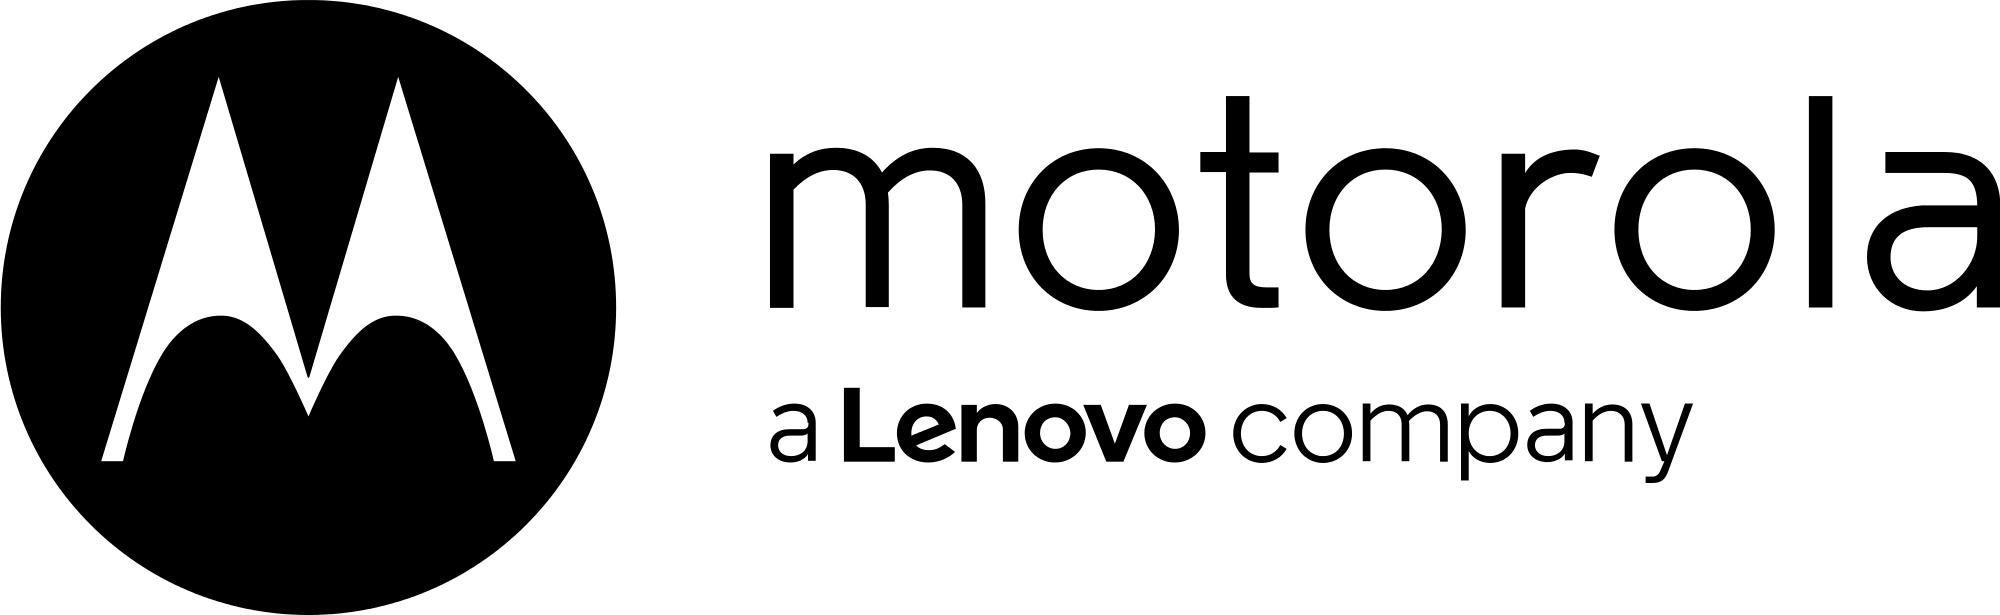 Motorola Mobility Logo - Motorola Mobility Logo 2015.svg